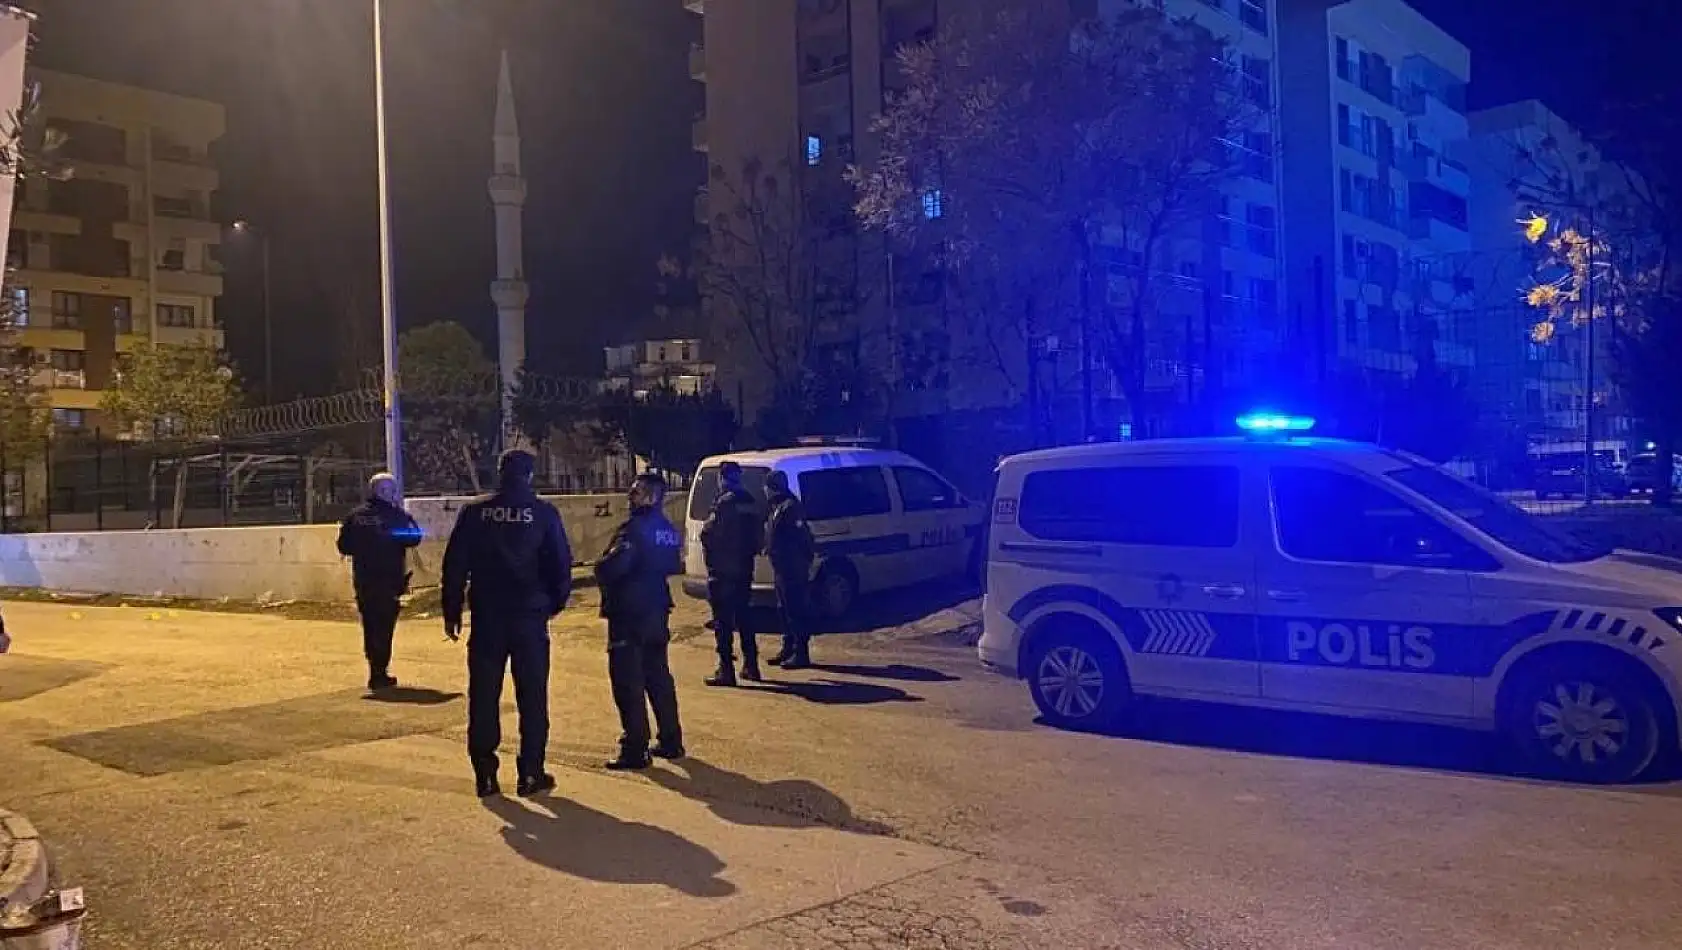 Ceyhan'da baba ve oğula silahlı saldırı: 1 ölü